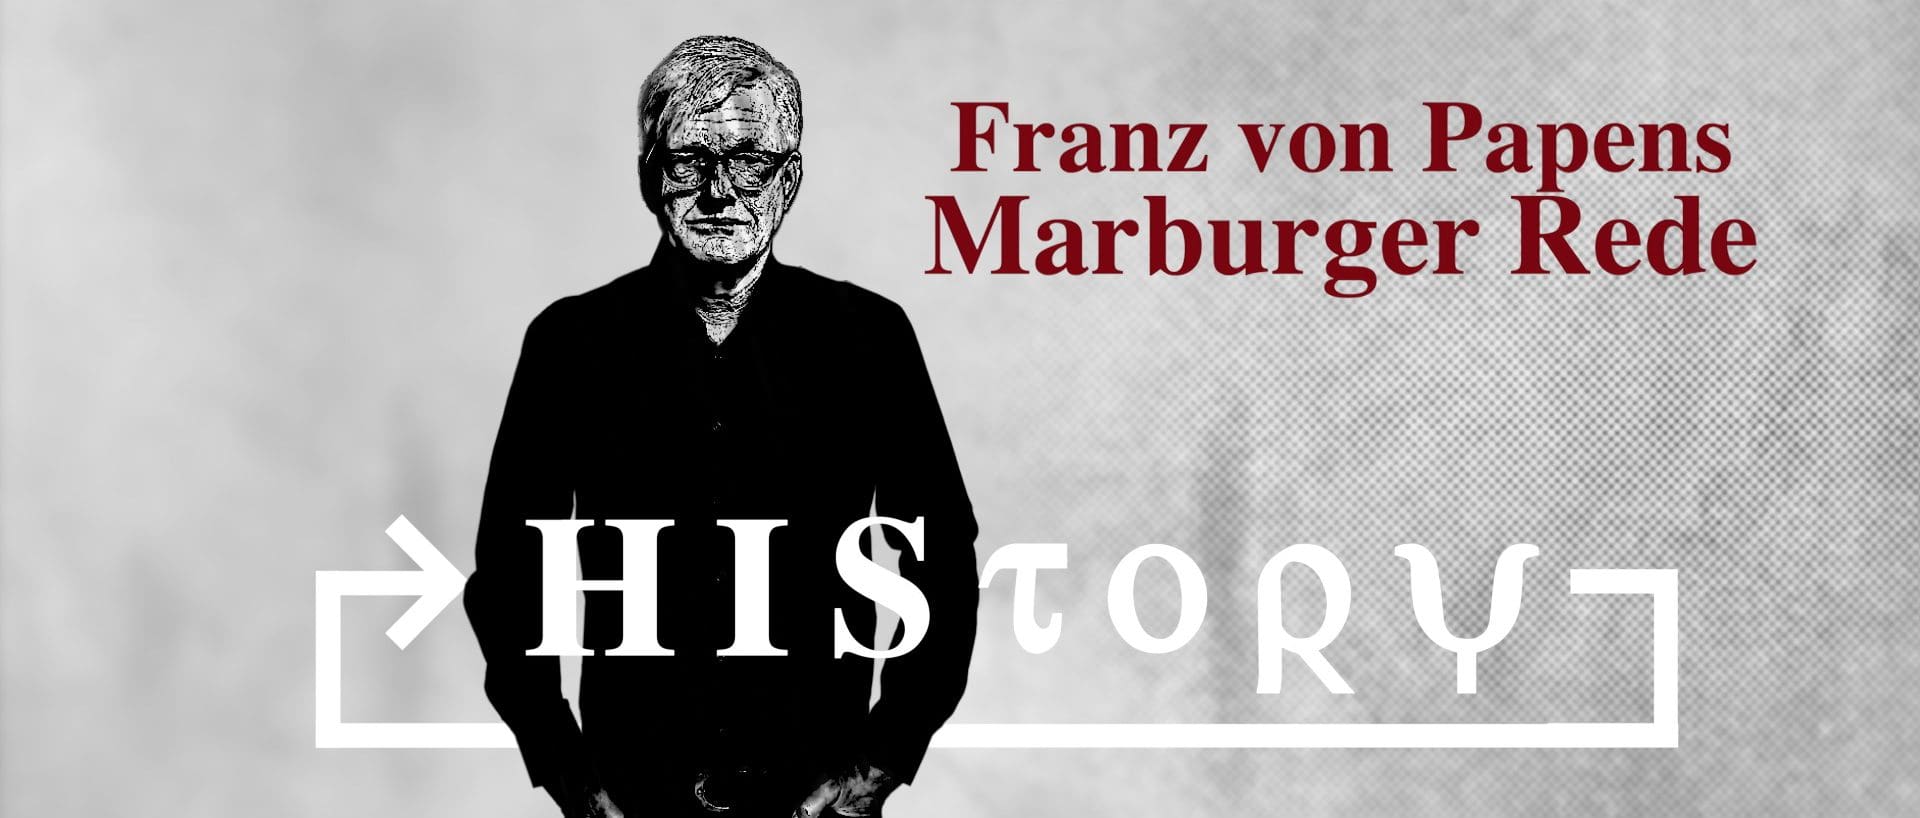 history-franz-von-papens-marburger-rede